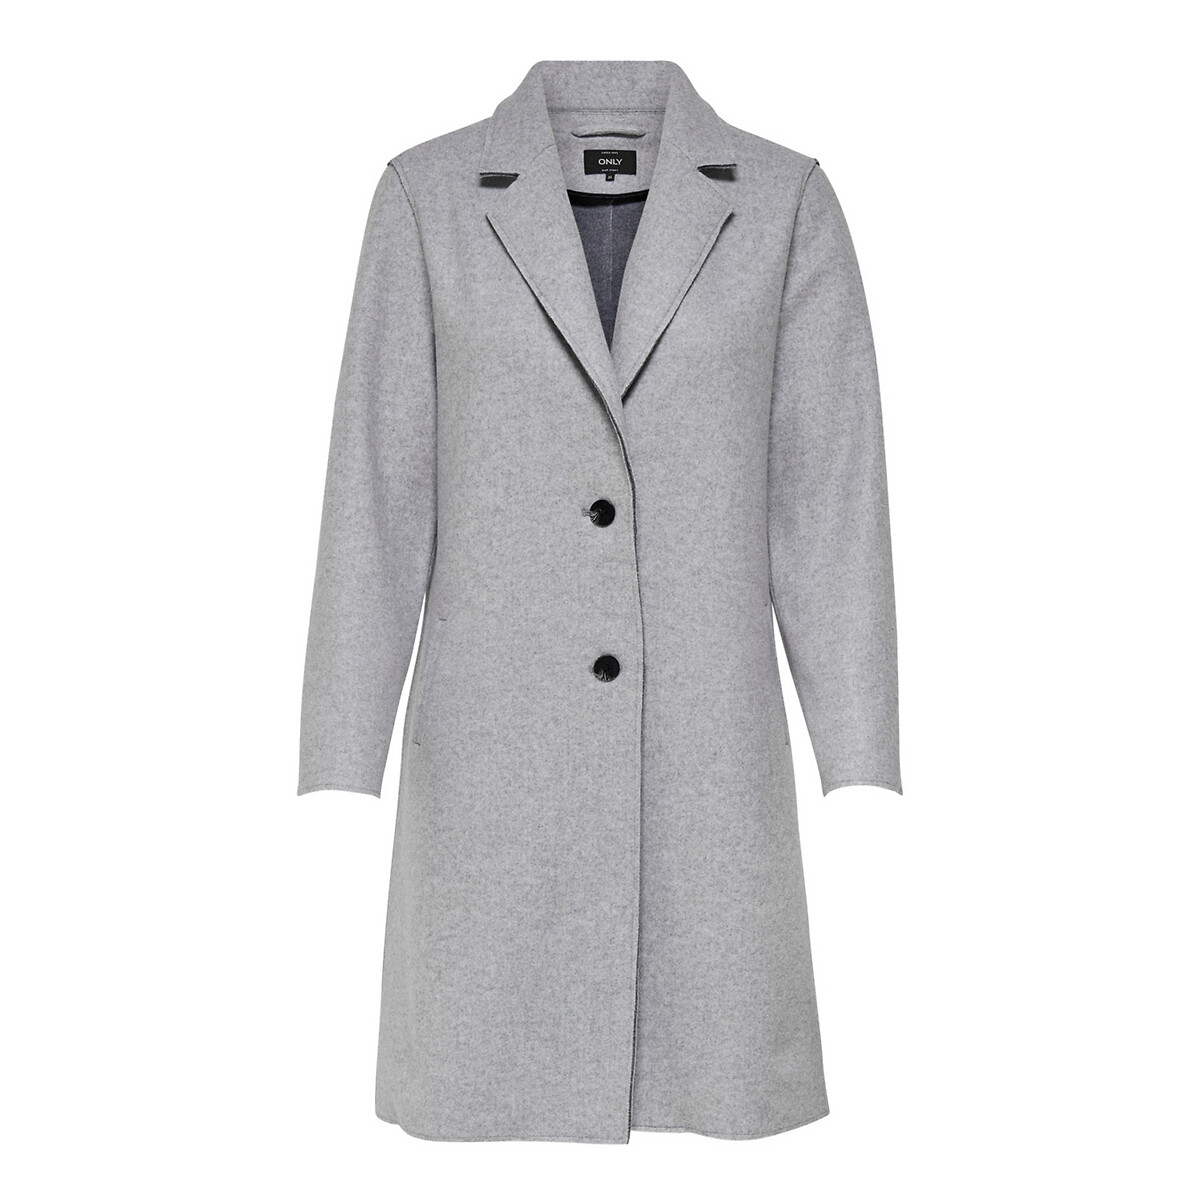 Пальто La Redoute Средней длины на пуговицах M серый, размер M - фото 5